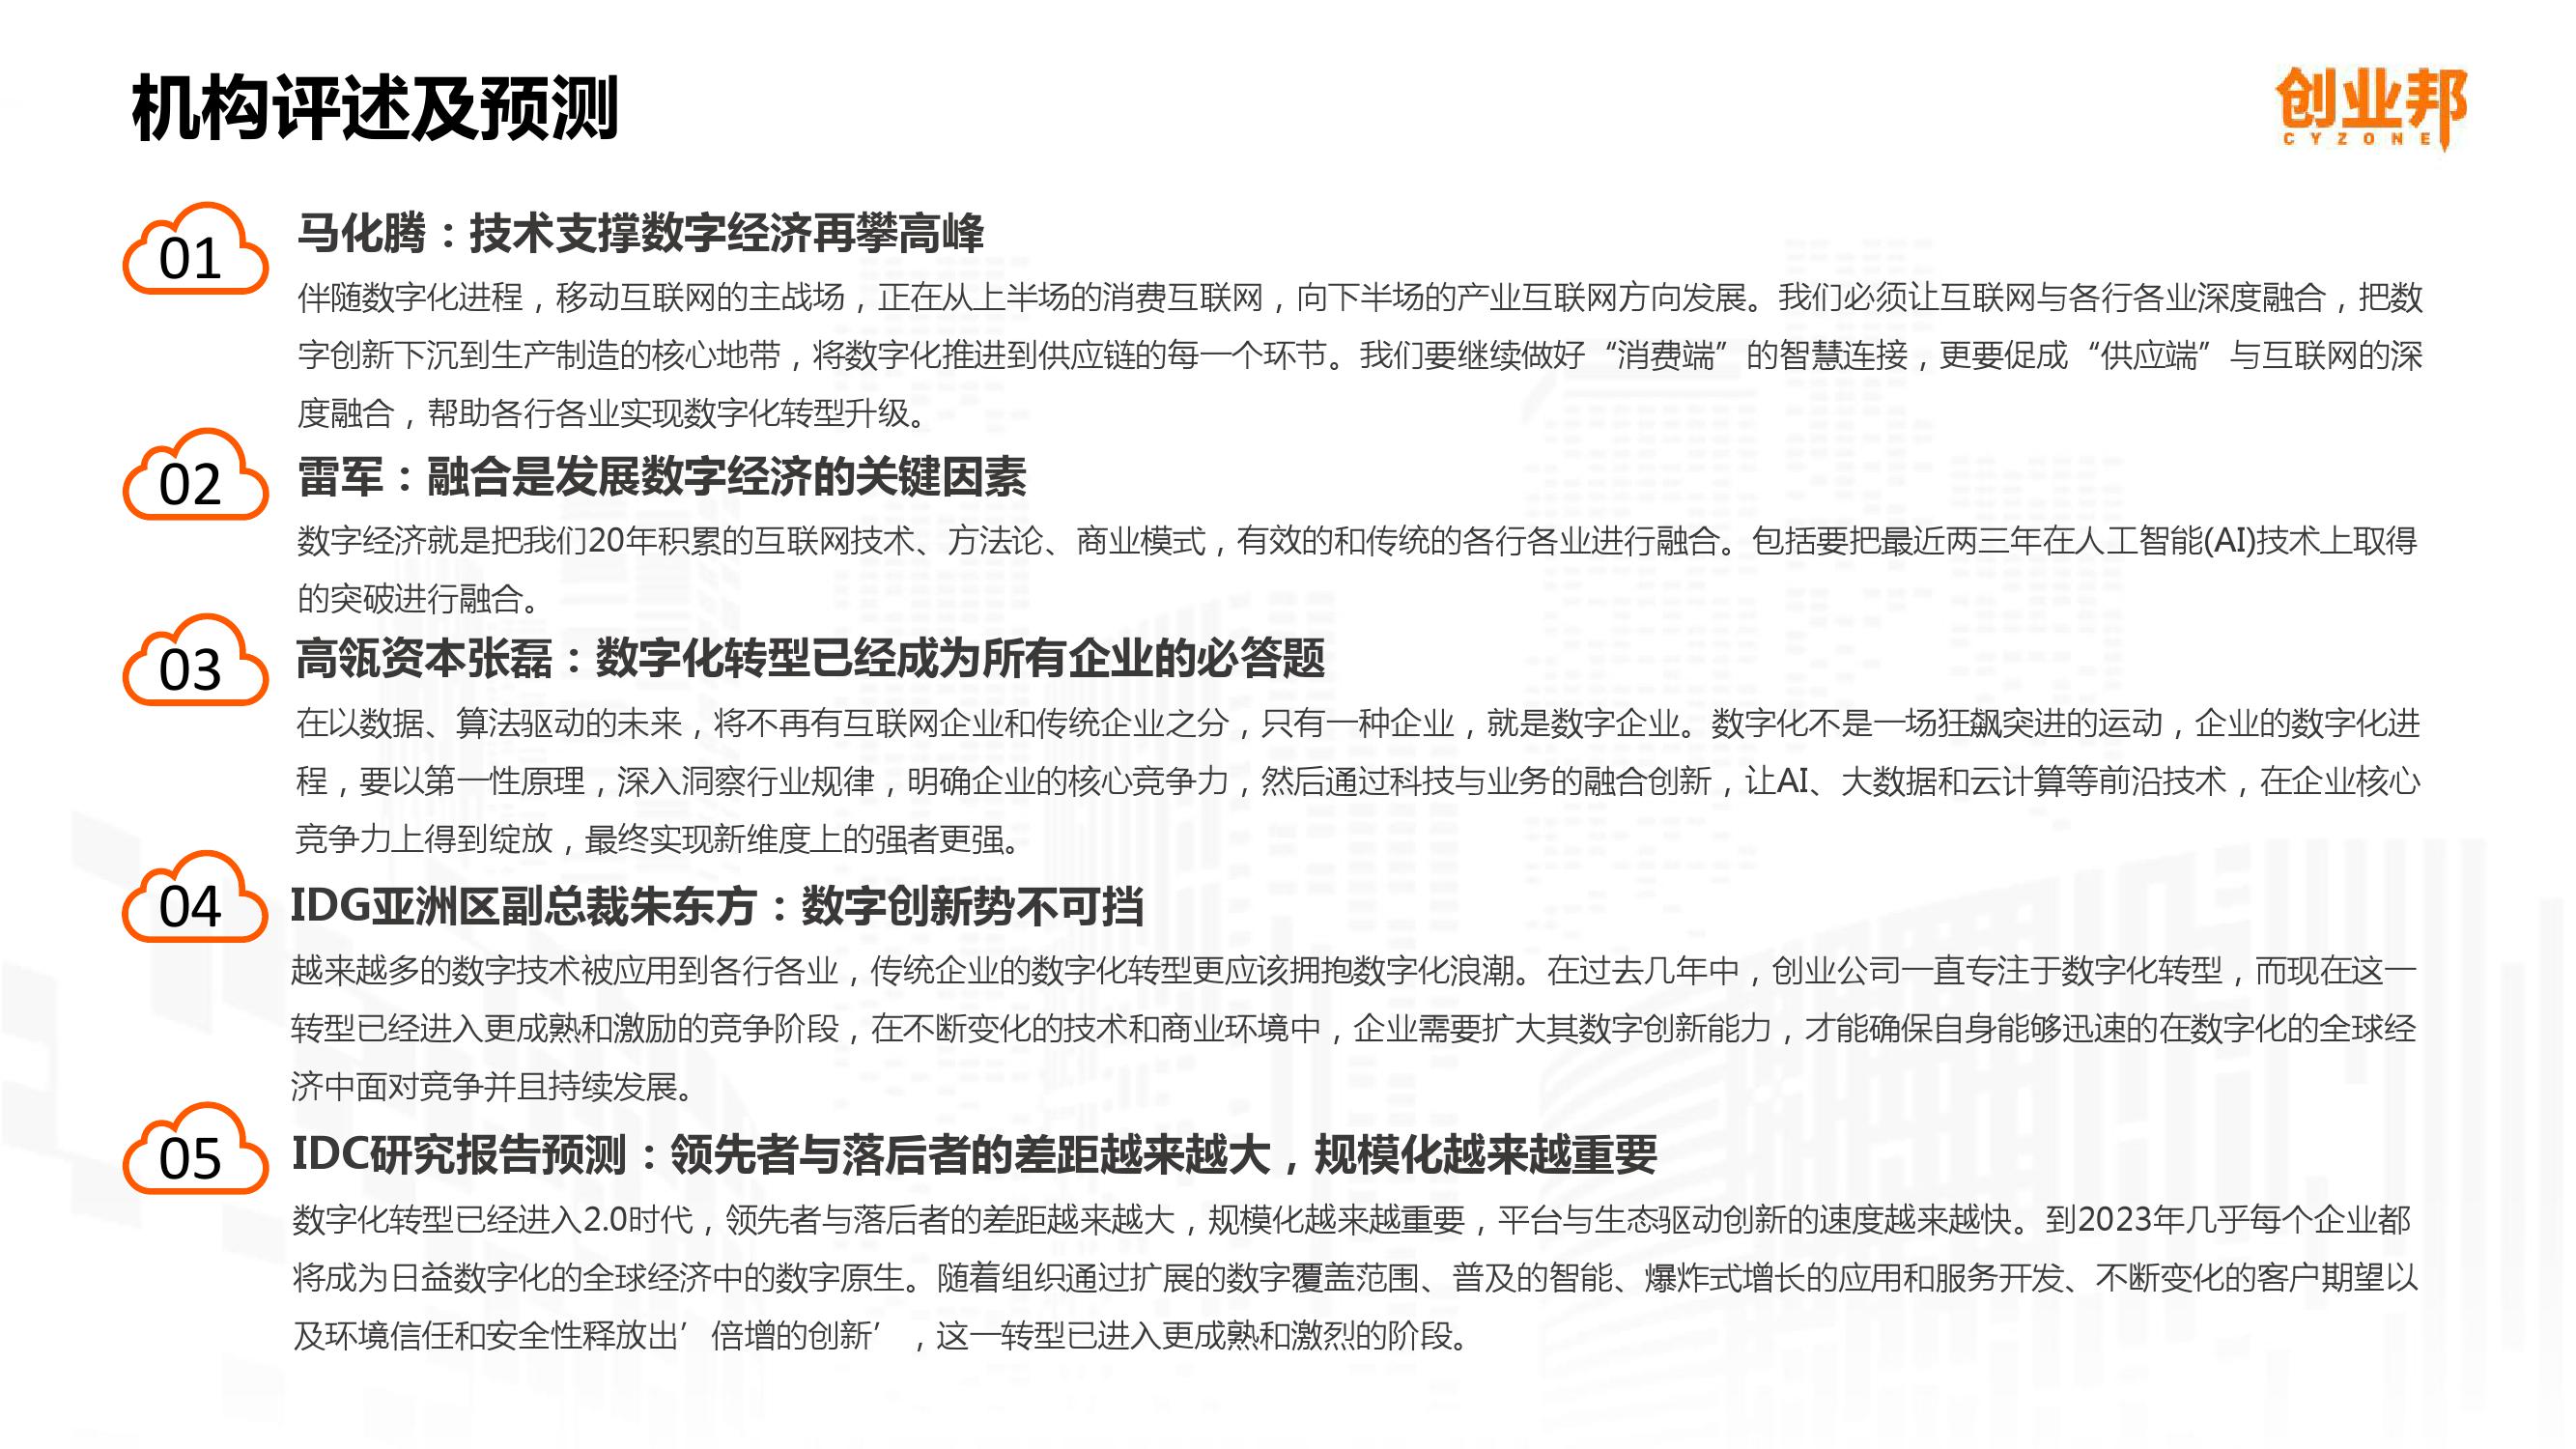 2019中国企业数字化智能化研究报告_000044-3